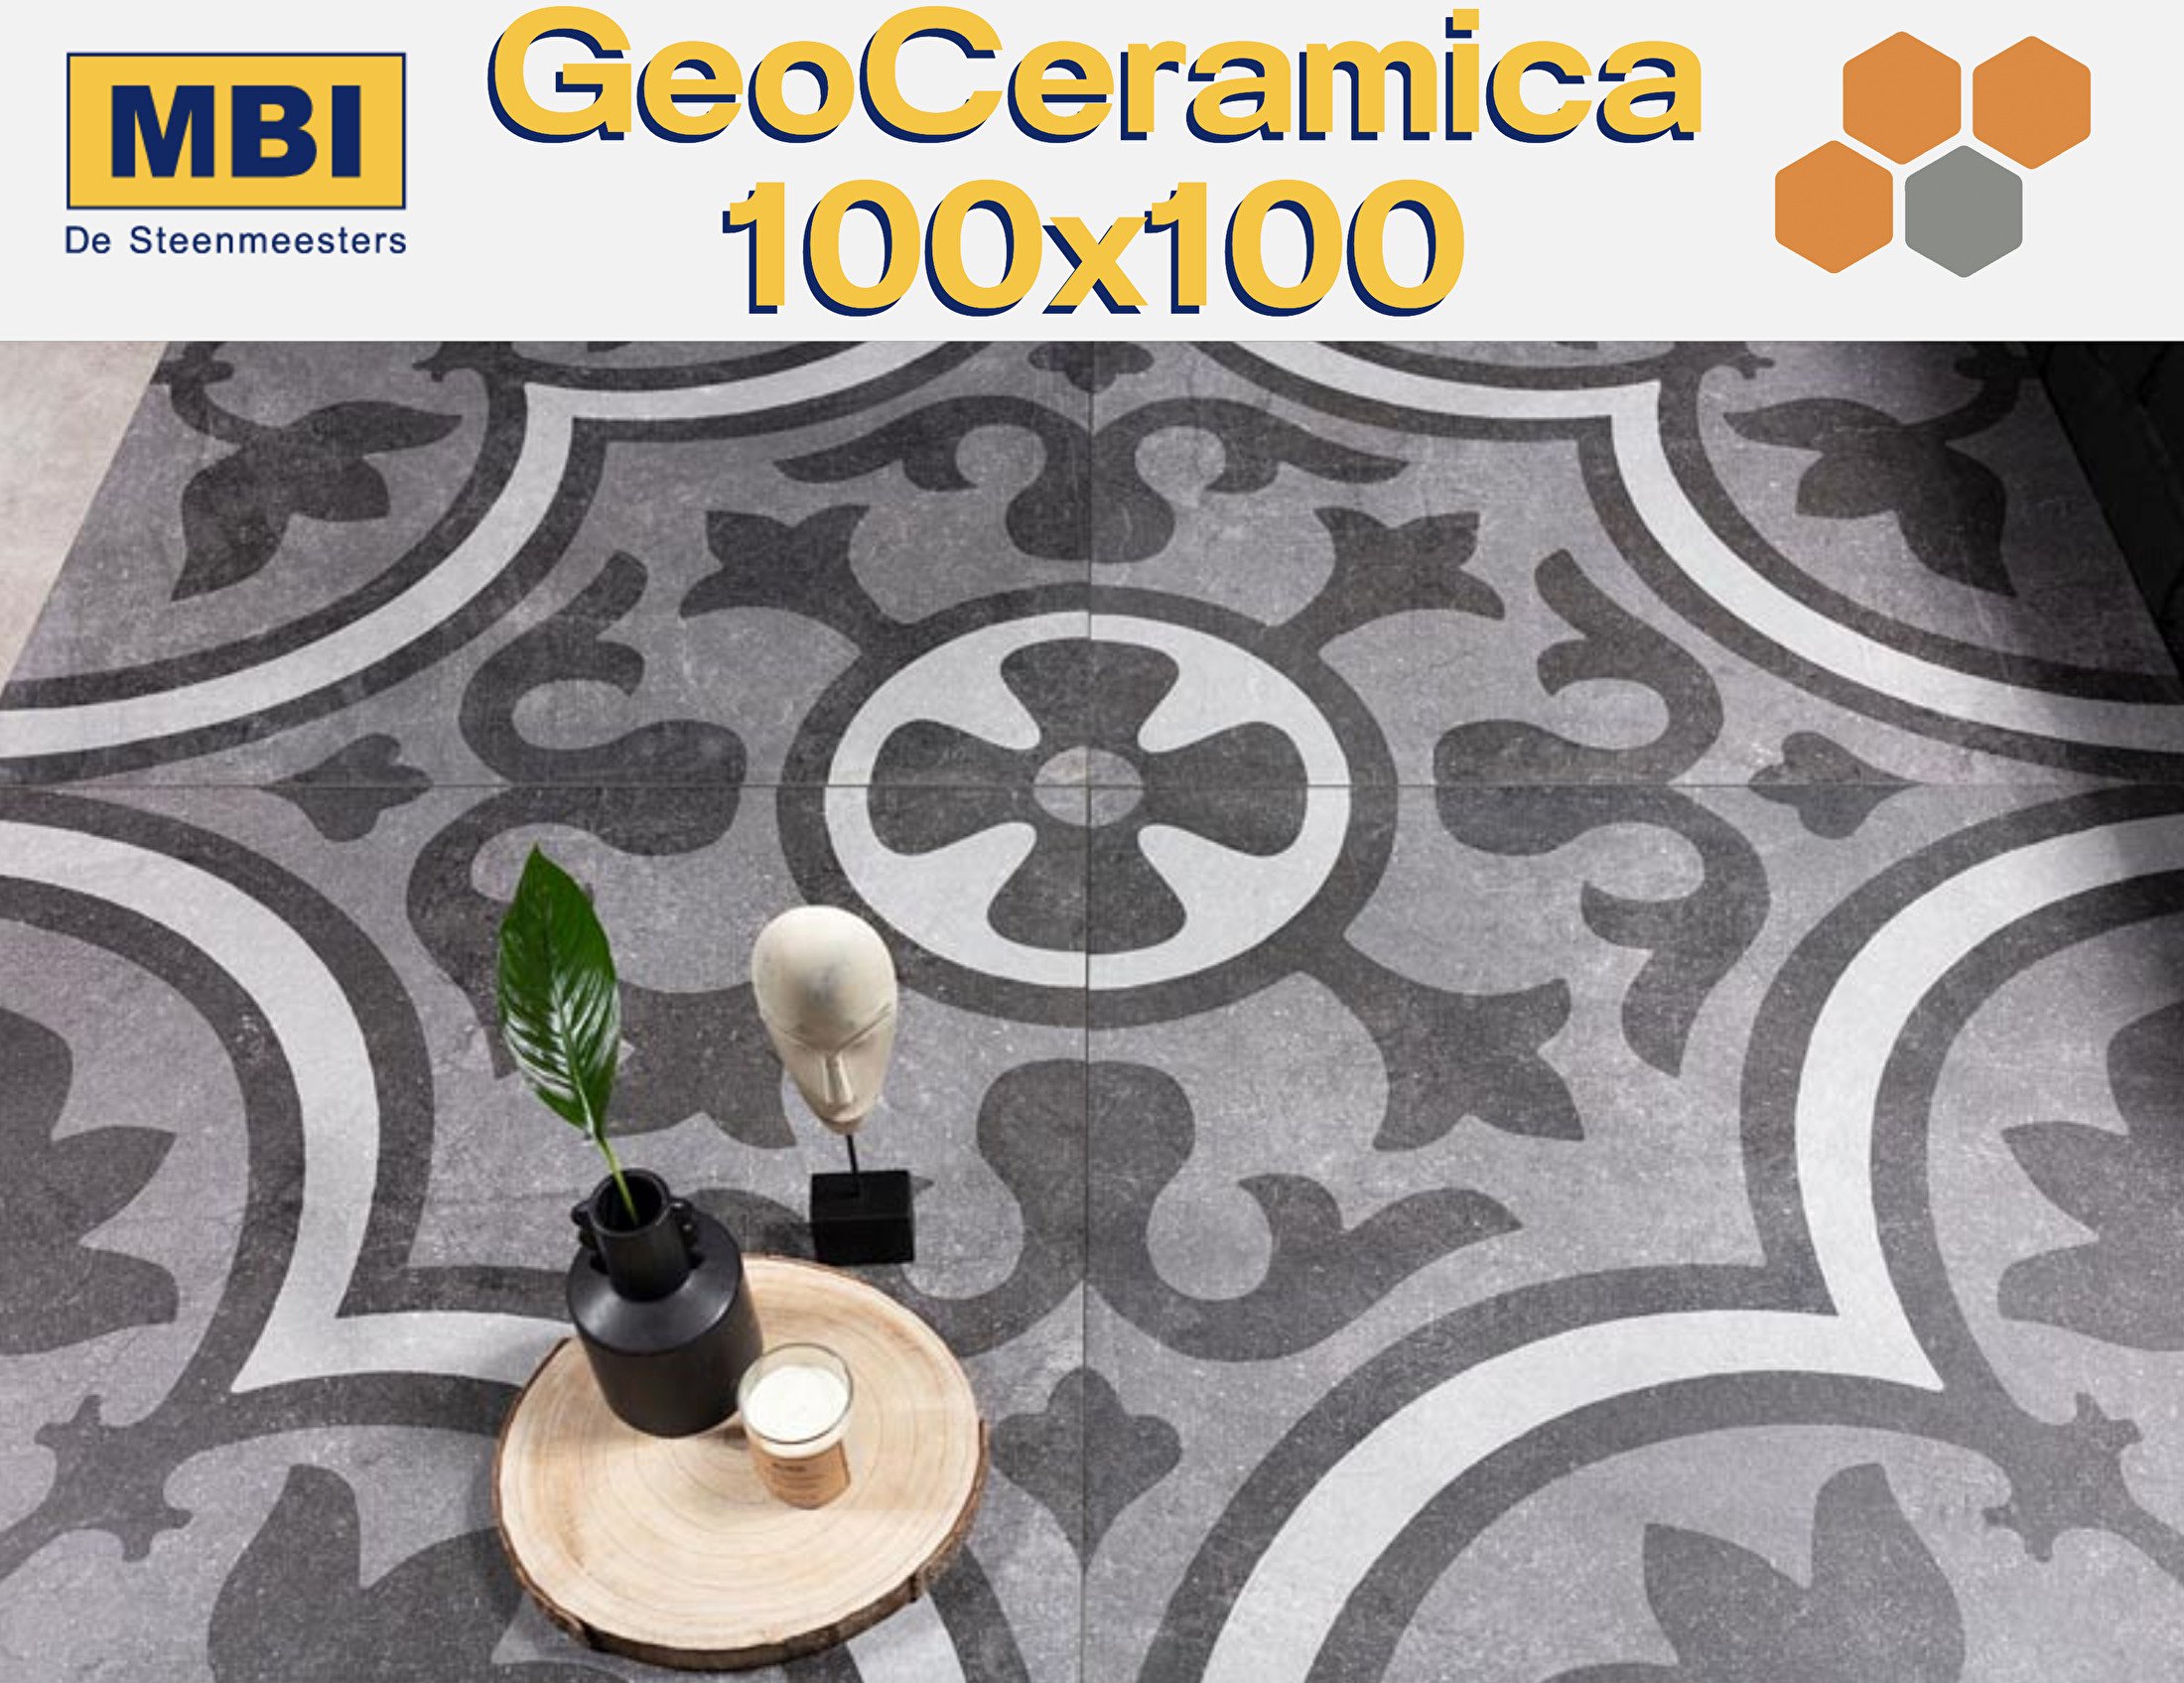 GeoCeramica 100x100